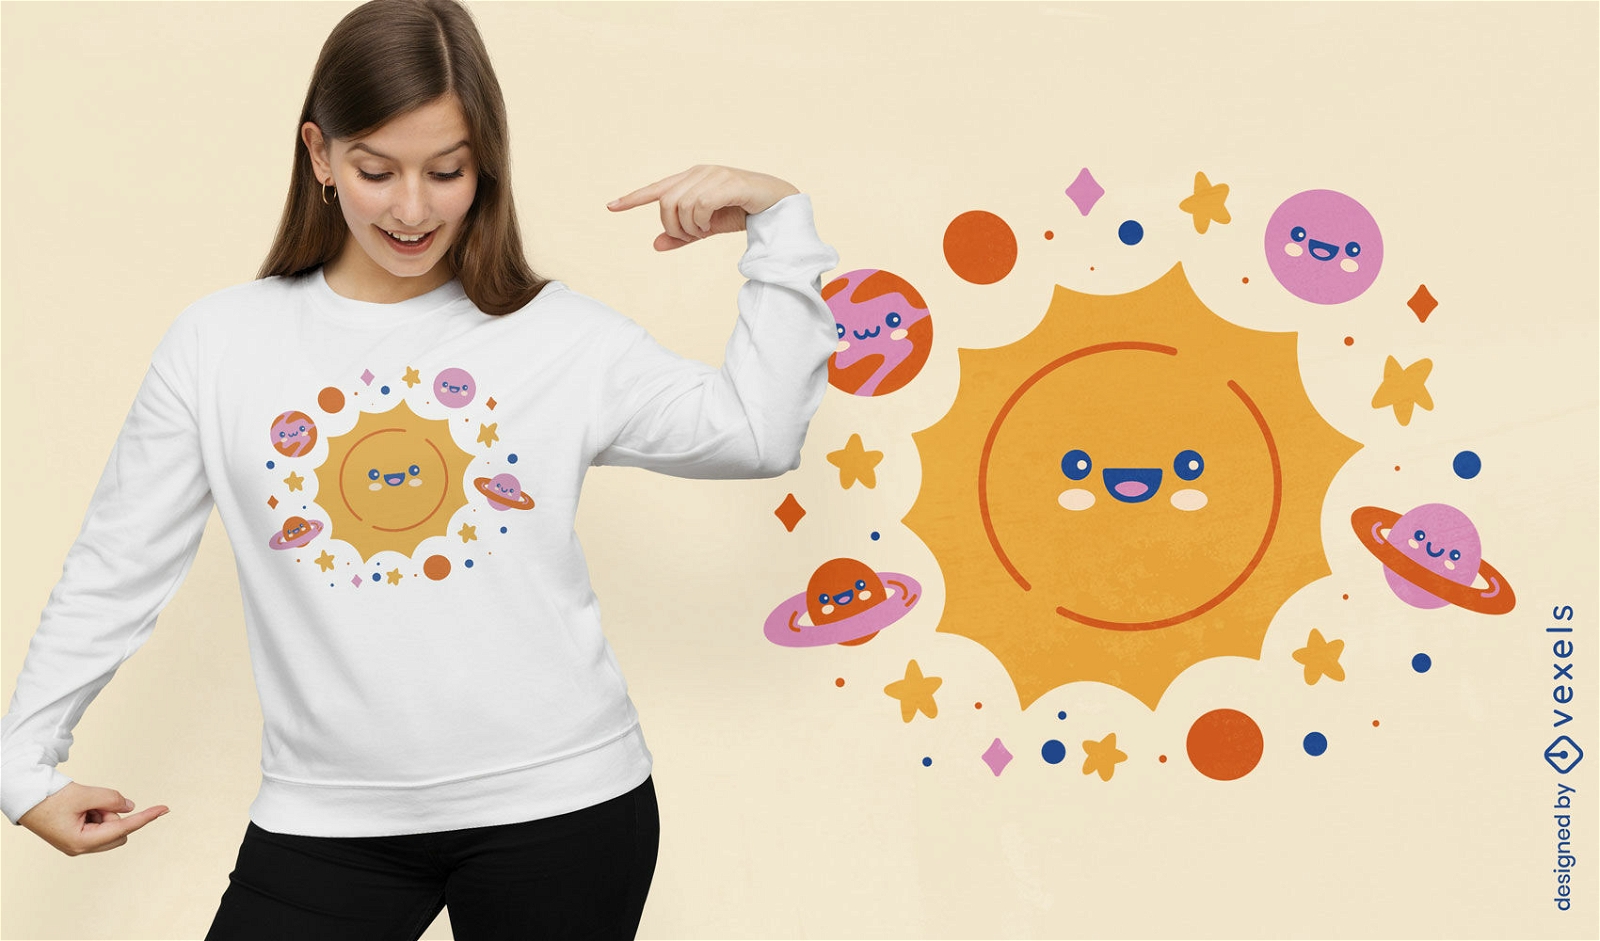 Diseño de camiseta de estilo lindo del sistema solar